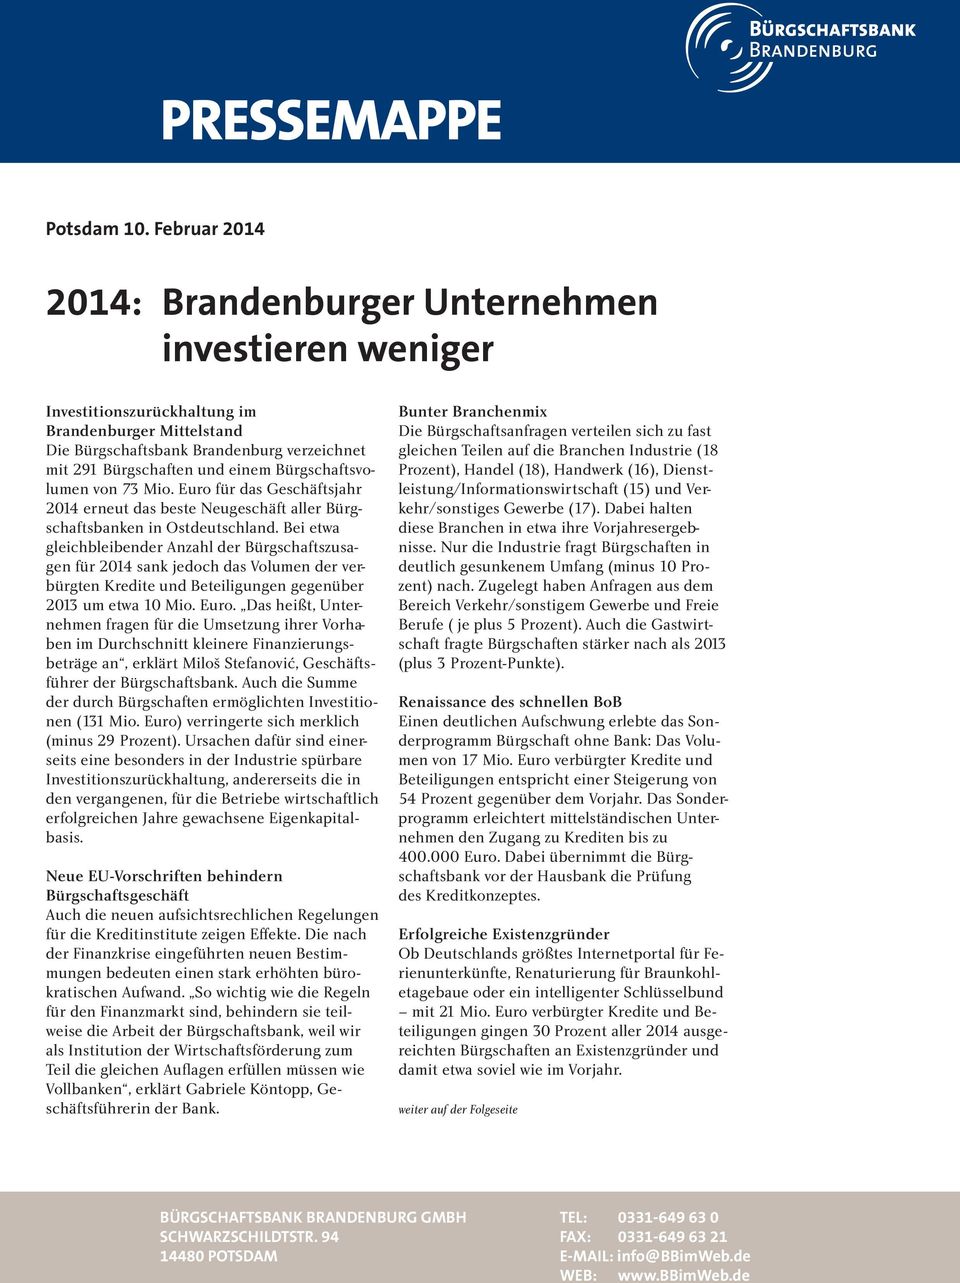 Bürgschaftsvolumen von 73 Mio. Euro für das Geschäftsjahr 2014 erneut das beste Neugeschäft aller Bürgschaftsbanken in Ostdeutschland.